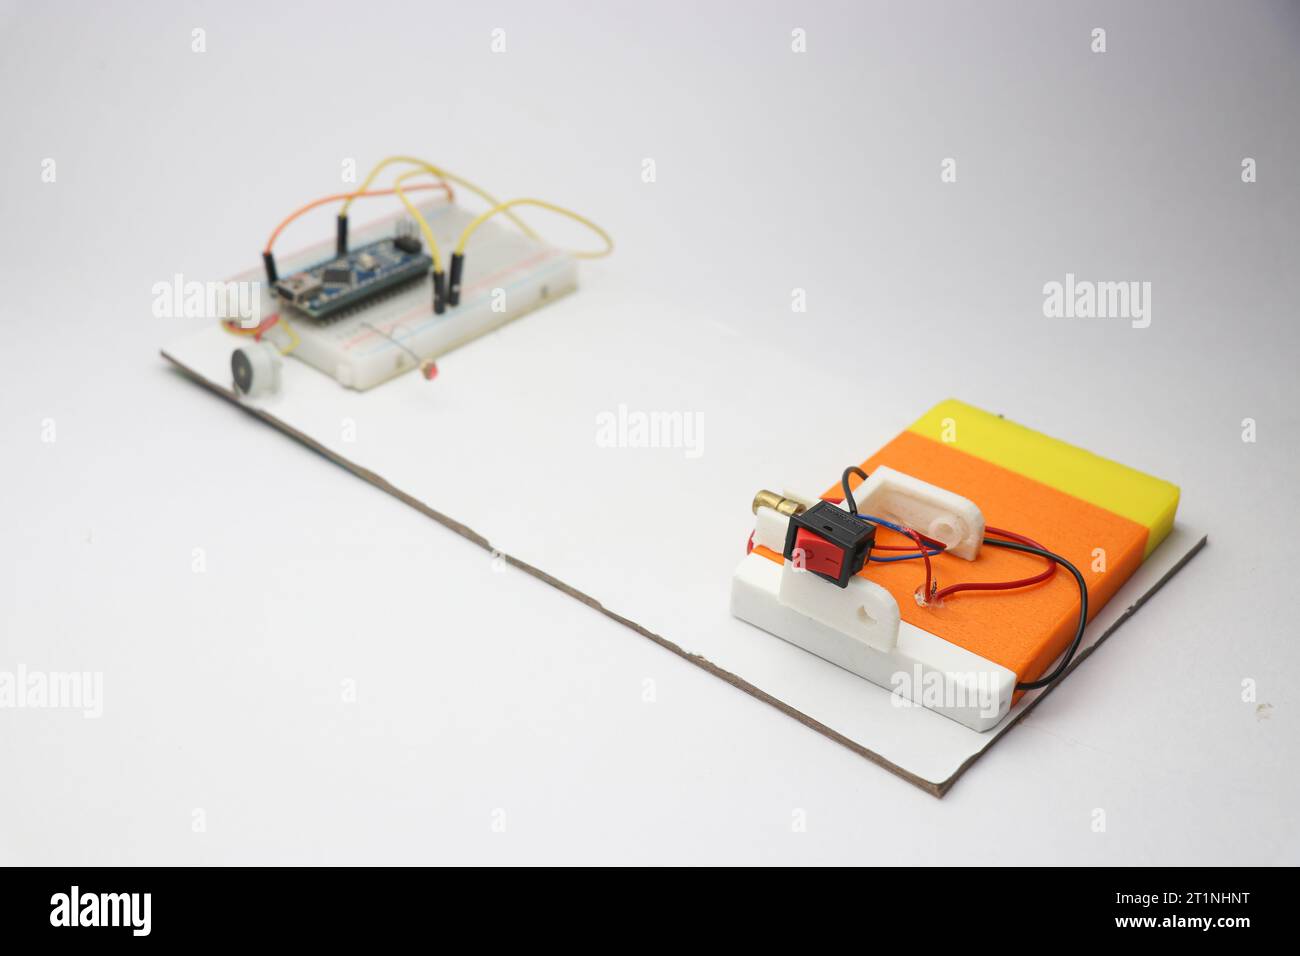 Prototyp eines Laser-Sicherheitsalarmgeräts, gebaut auf einem Stück Brett. Arbeitsmodelle eines Sicherheitssystems, das Laser verwendet Stockfoto